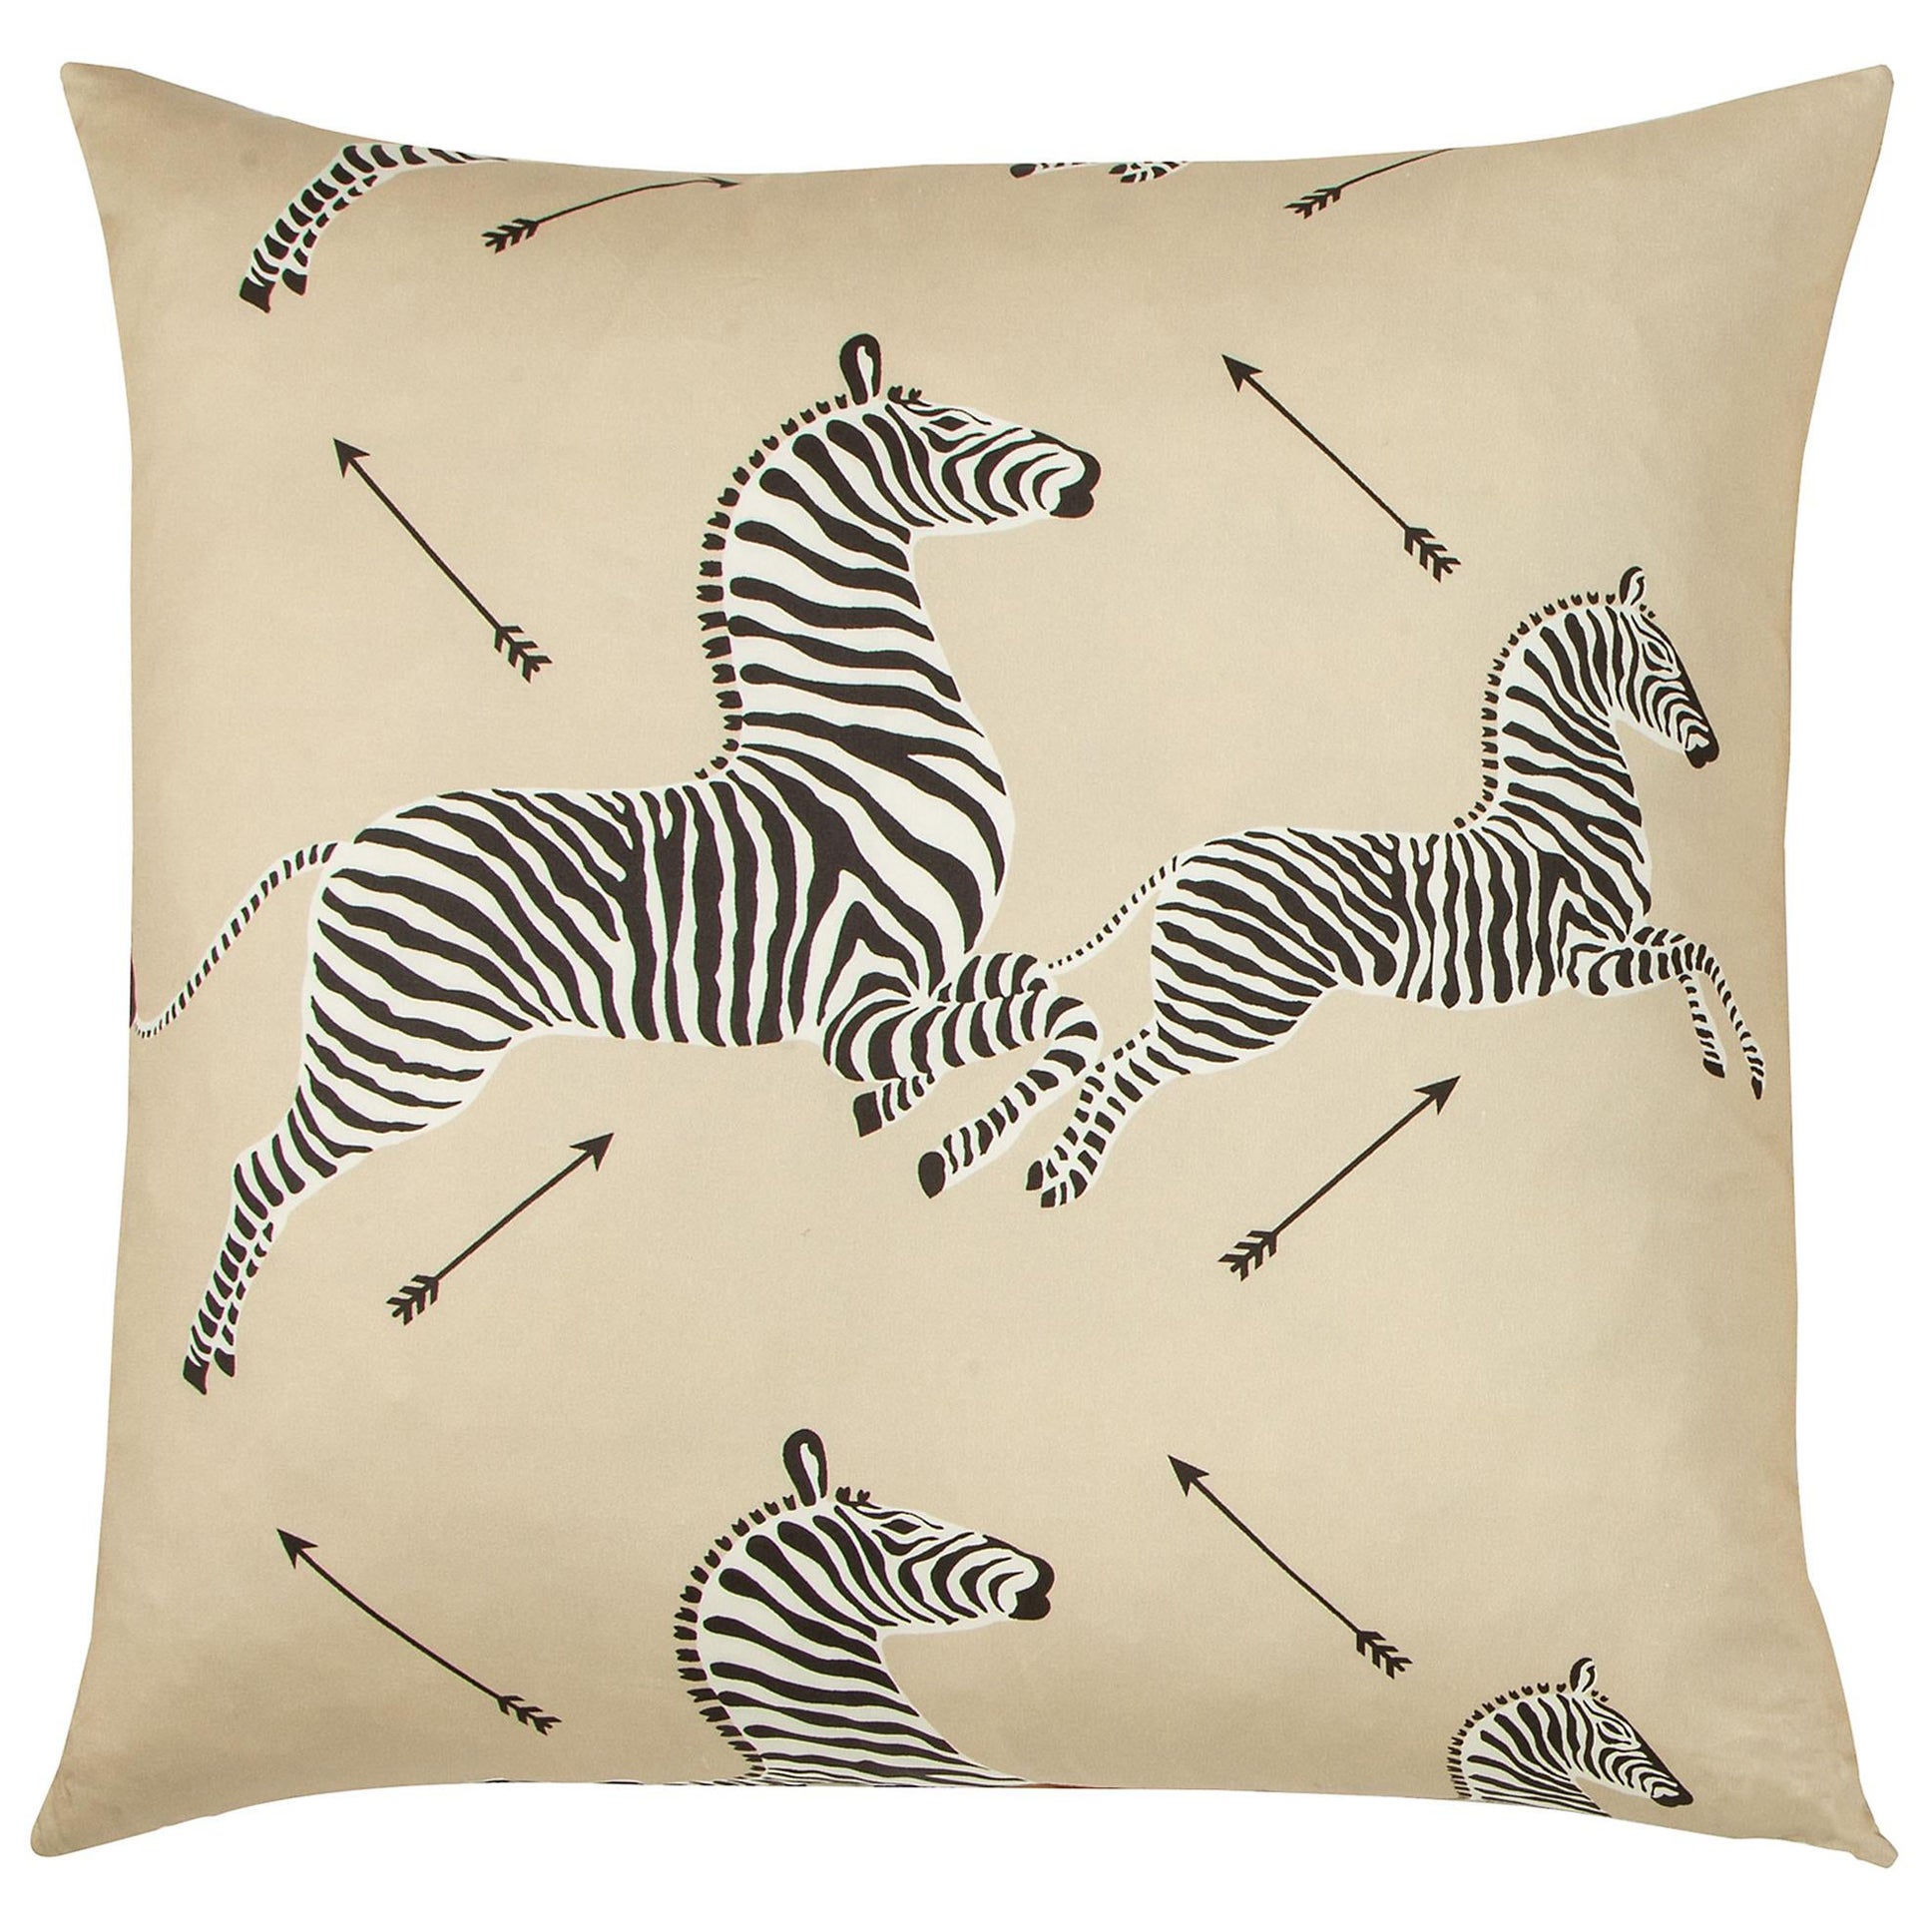 Dazzle Of Zebras Pillow